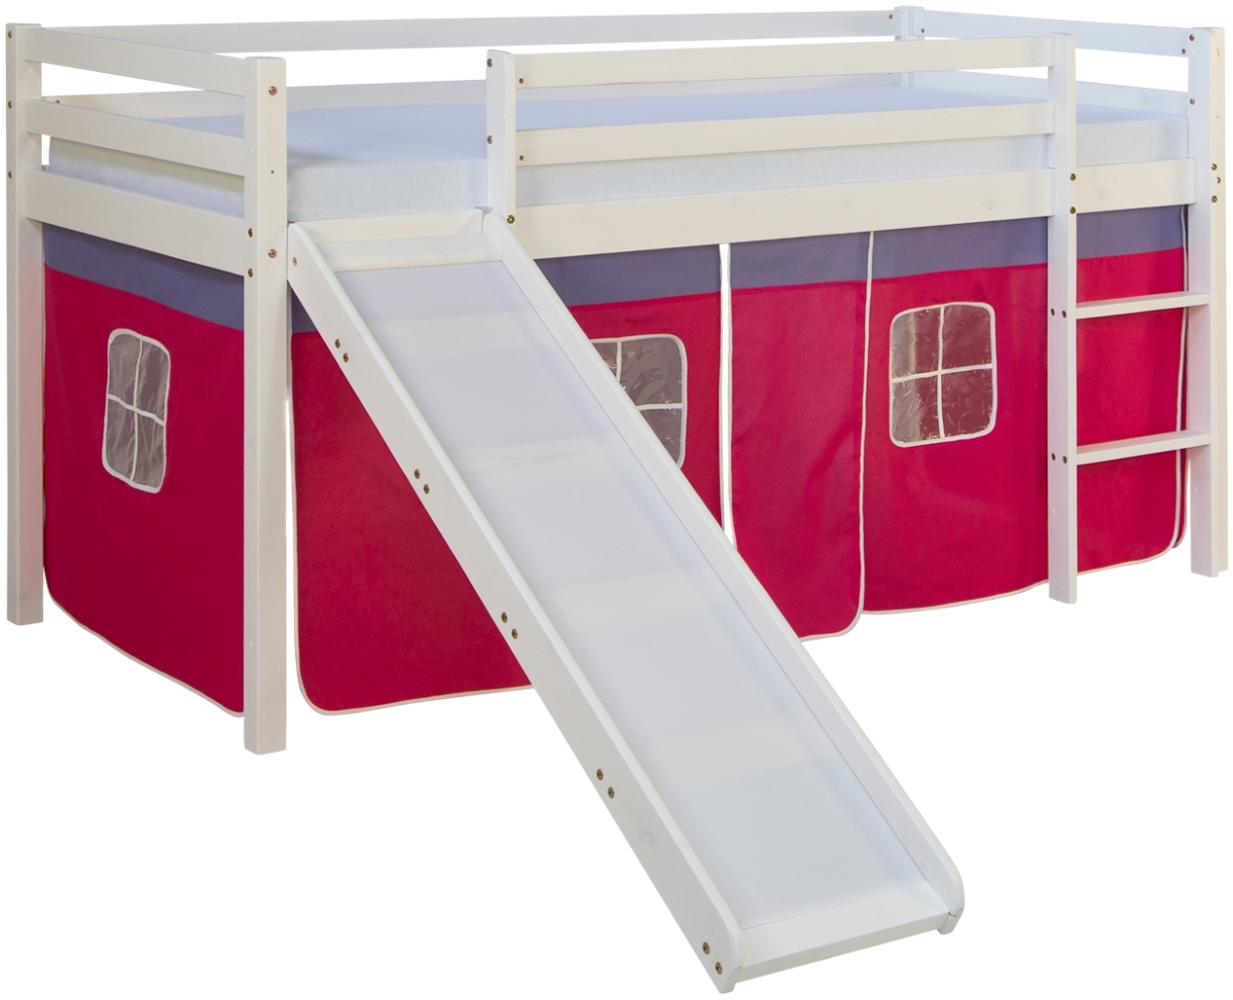 Kinderbett Hochbett Massiv Kiefer weiß pinker Vorhang, Rutsche, Spielbett Bild 1